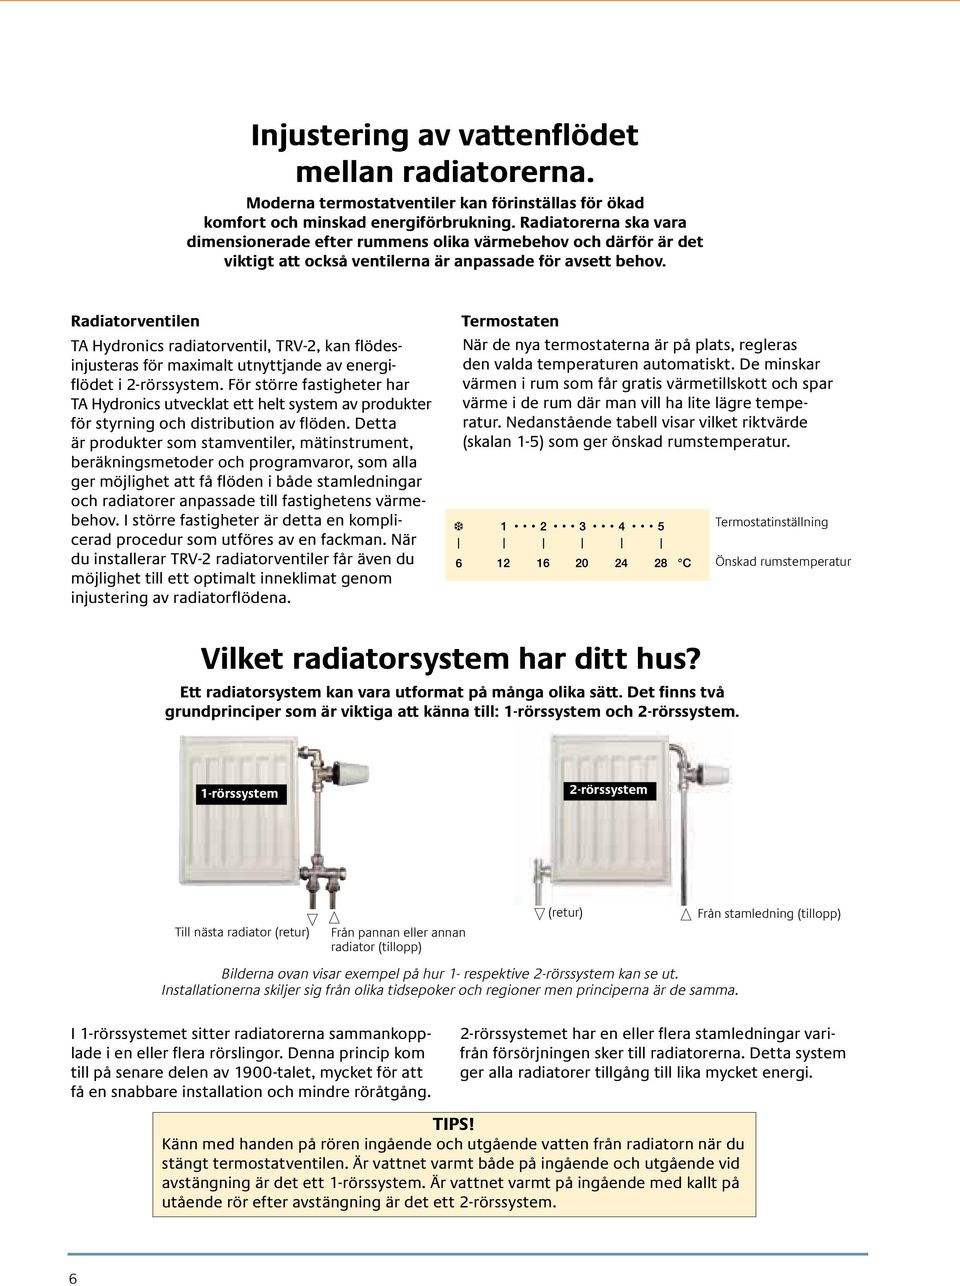 Radiatorventilen TA Hydronics radiatorventil, TRV-2, kan flödesinjusteras för maximalt utnyttjande av energiflödet i 2-rörssystem.